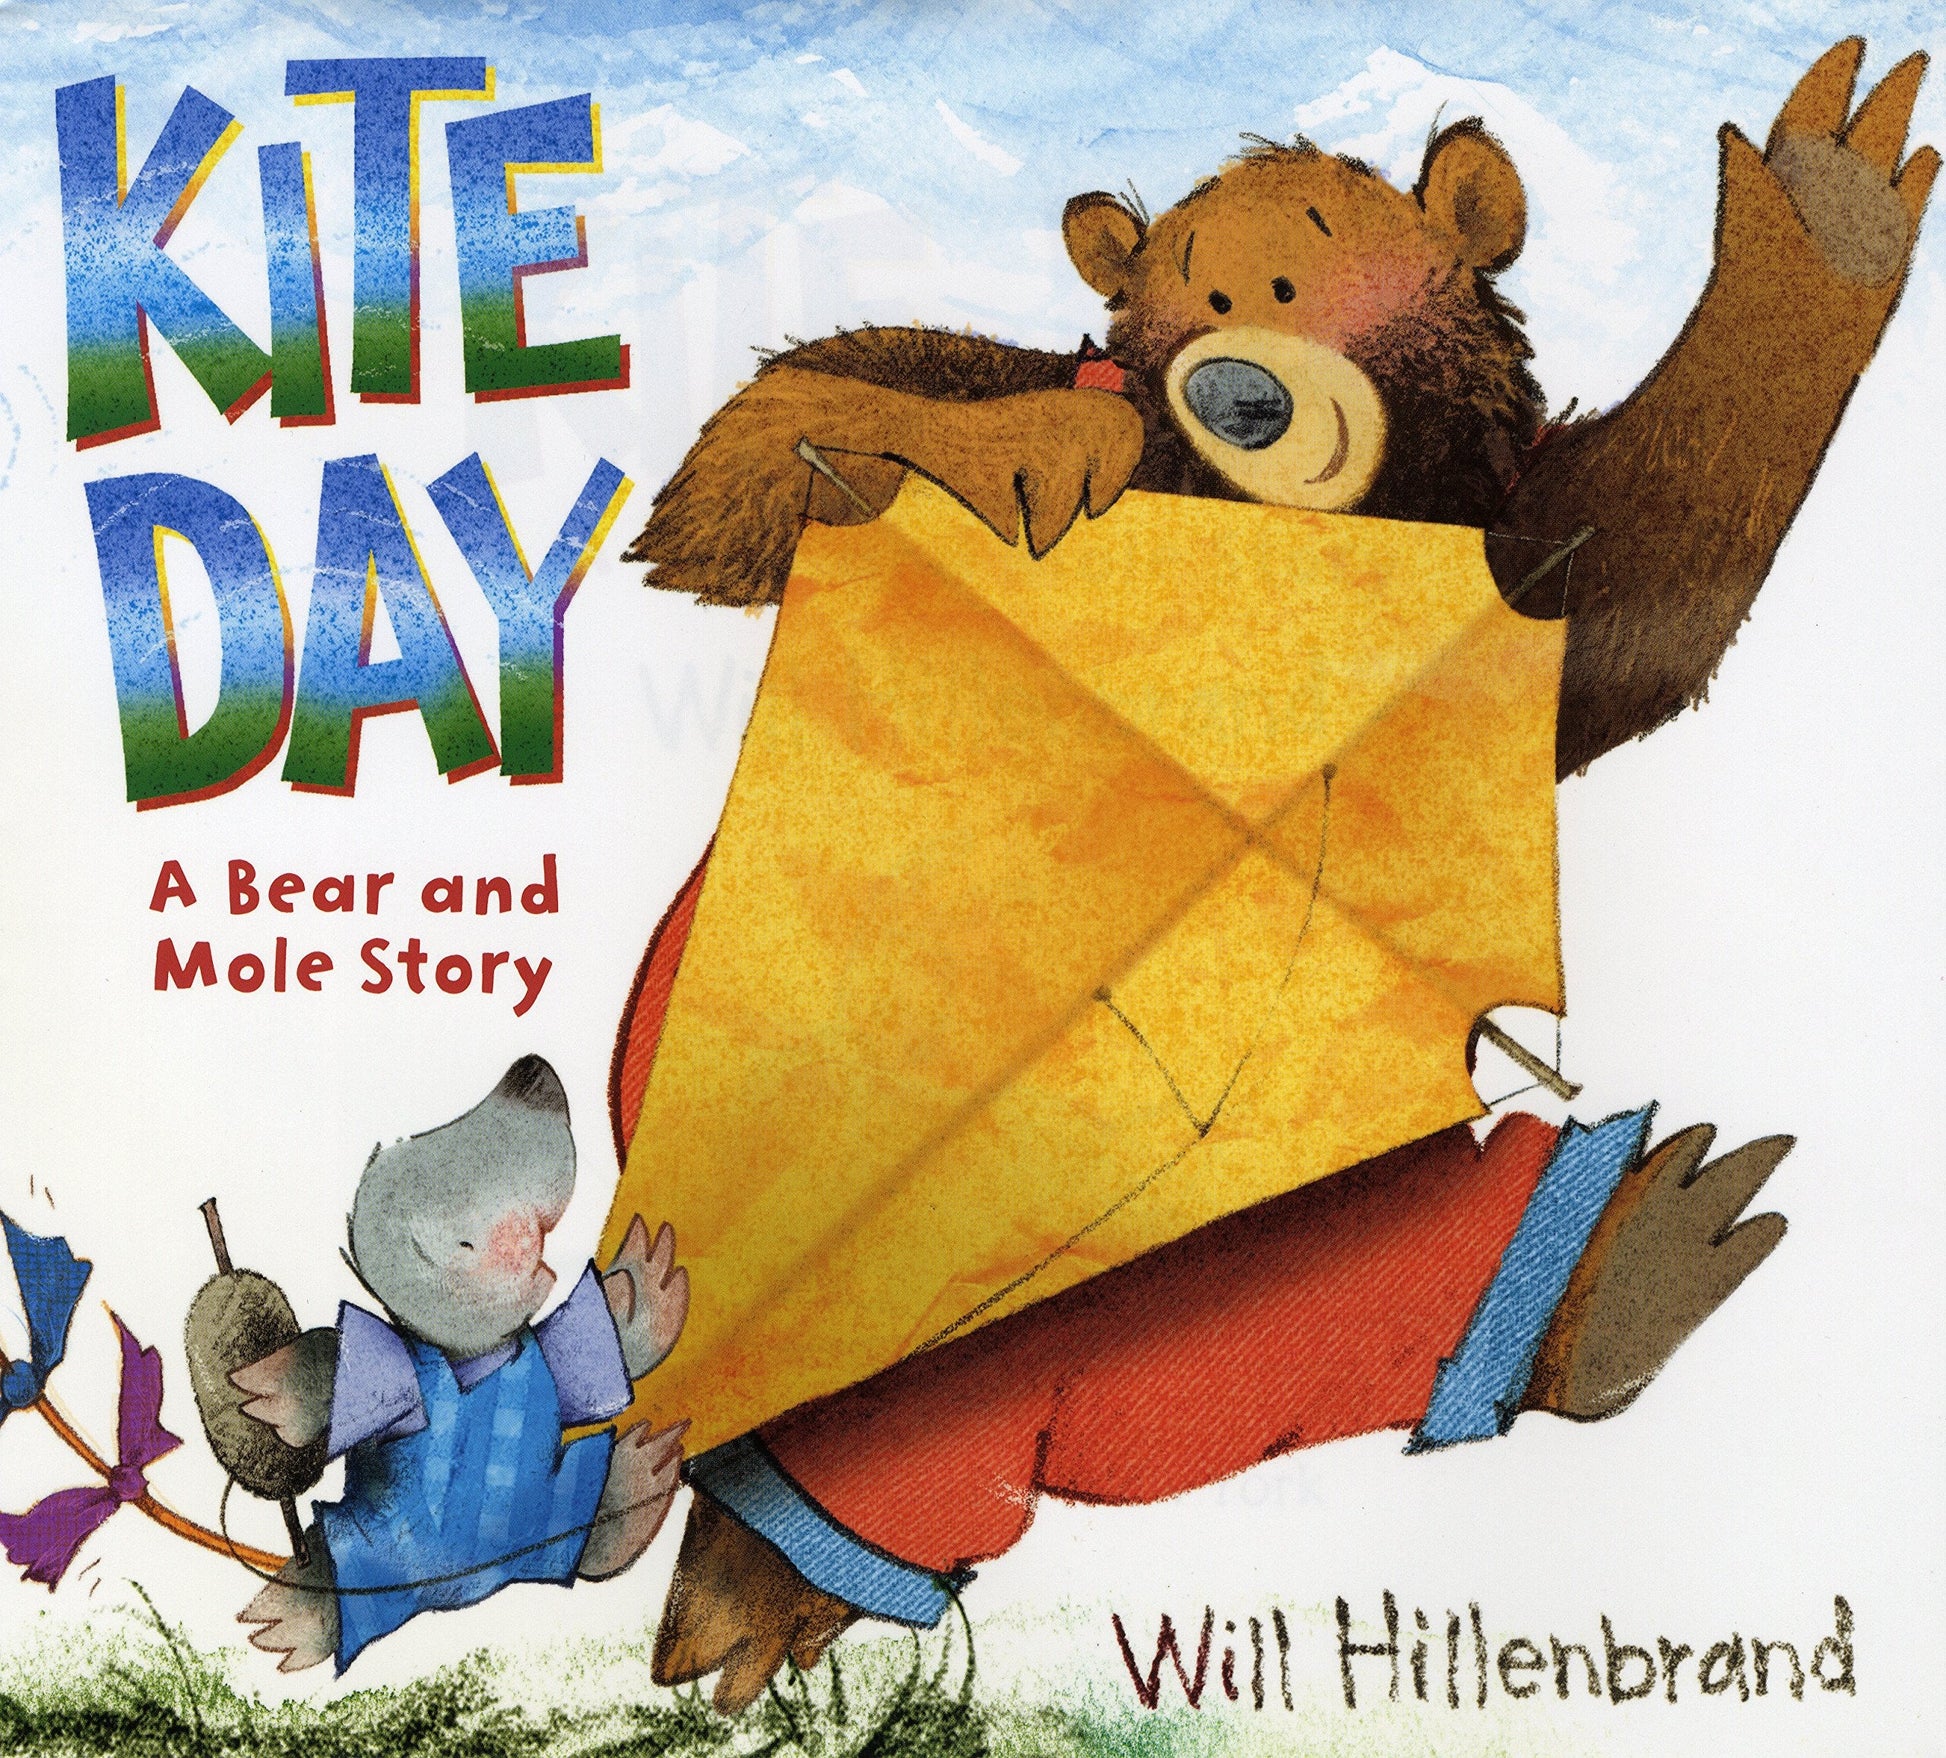 Kite Day children's book